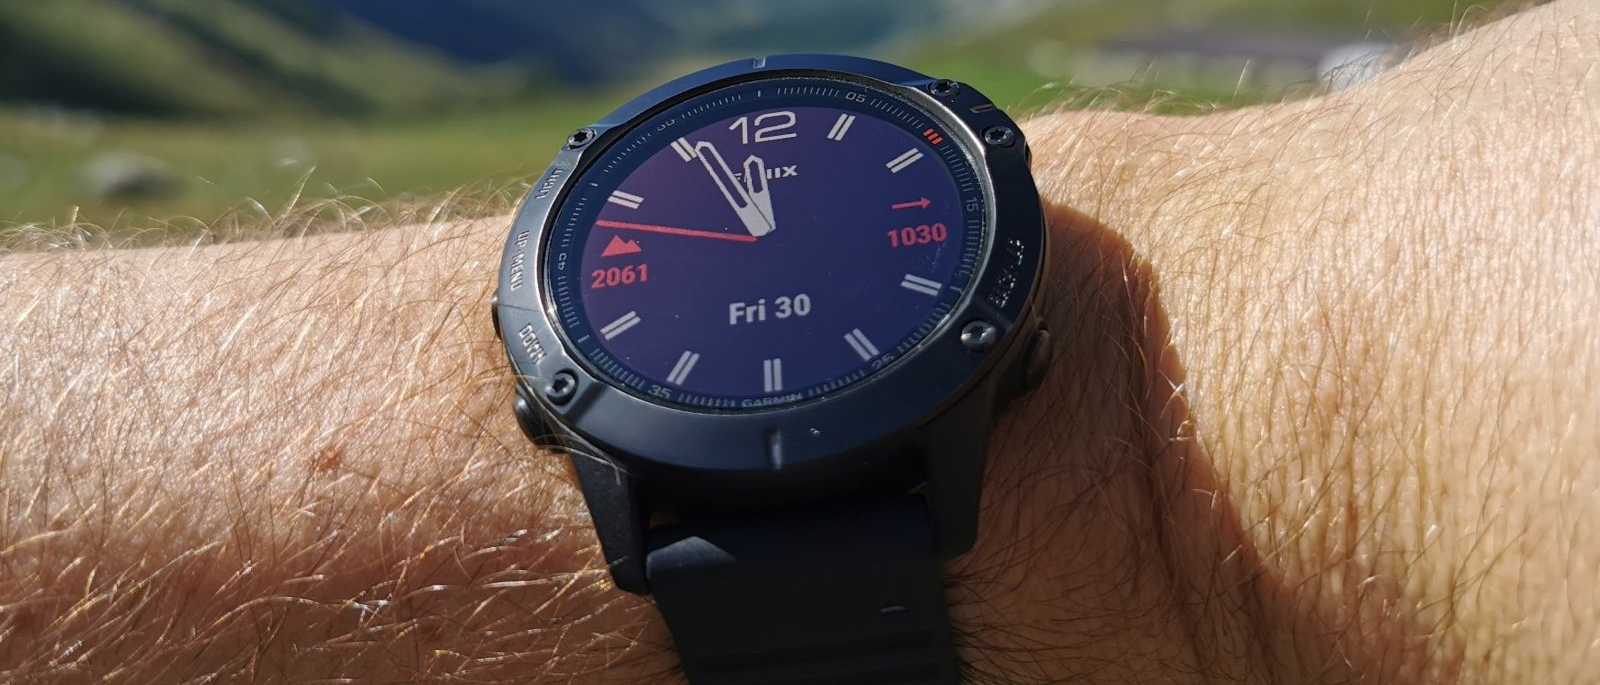 Garmin Fenix 6 Pro Solar smartwatch review